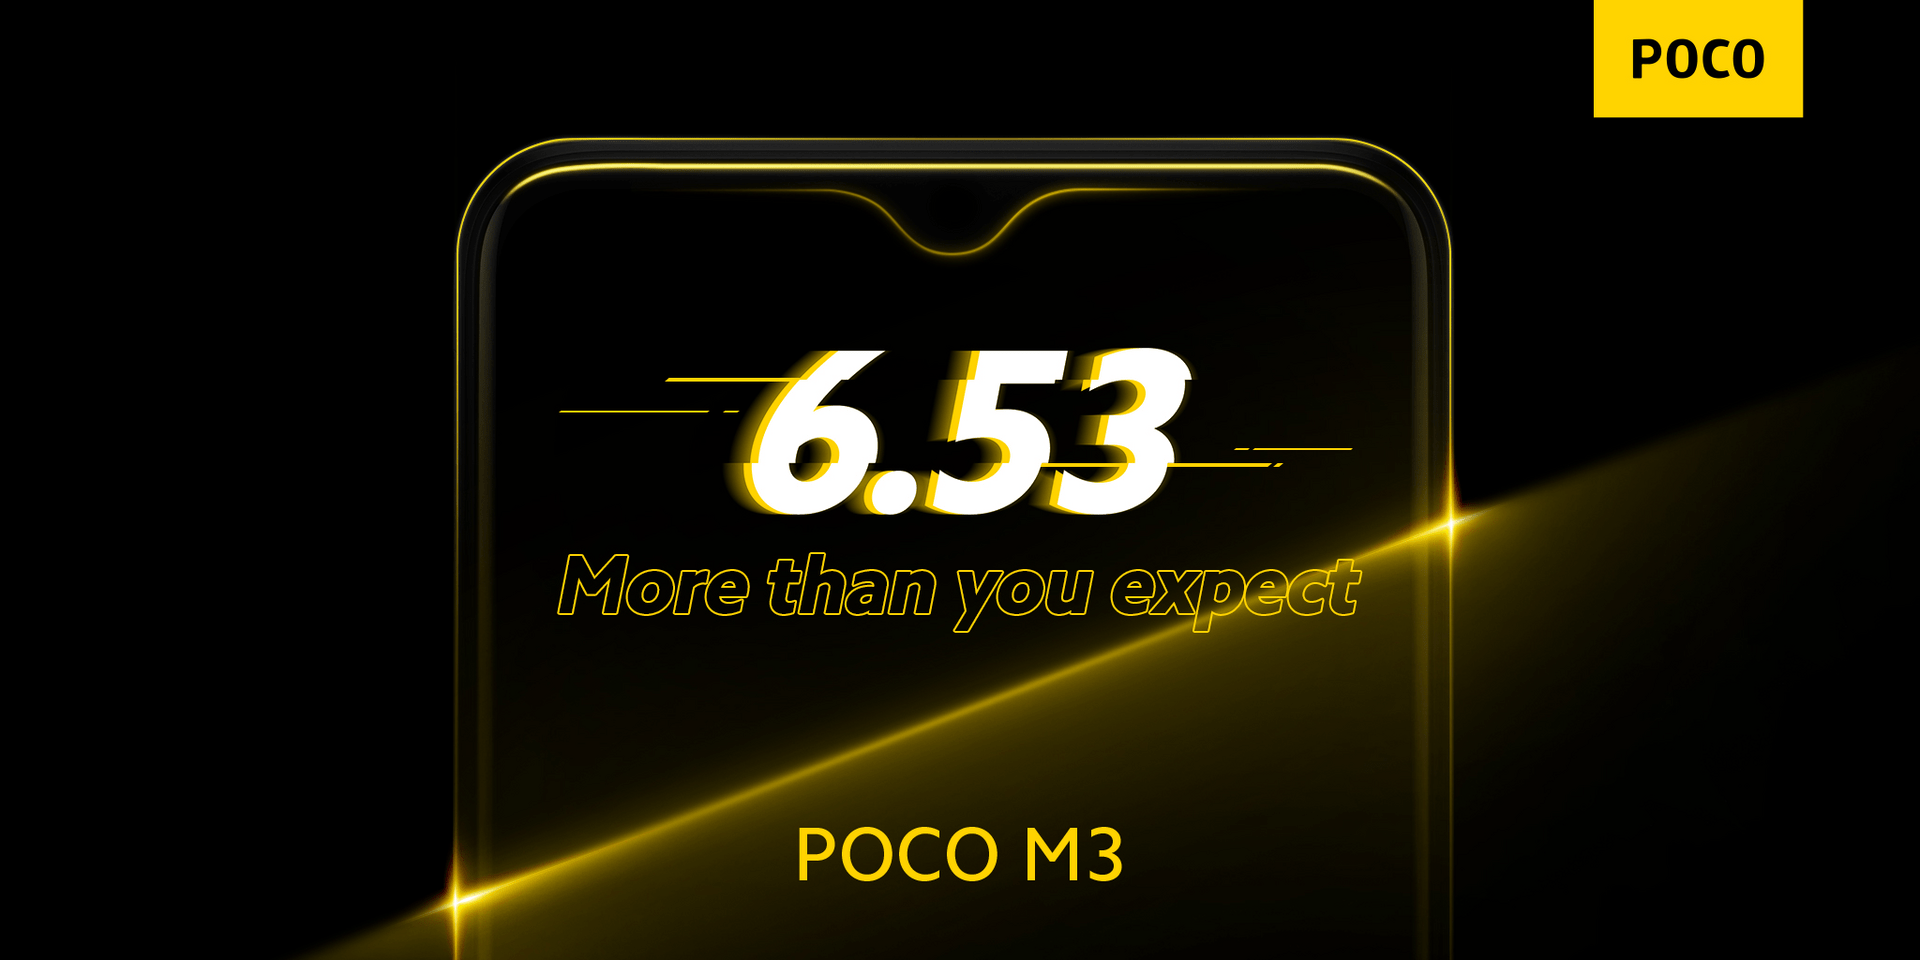 Das Poco M3 bietet ein 6,53 Zoll großes IPS-Display mit FHD+-Auflösung